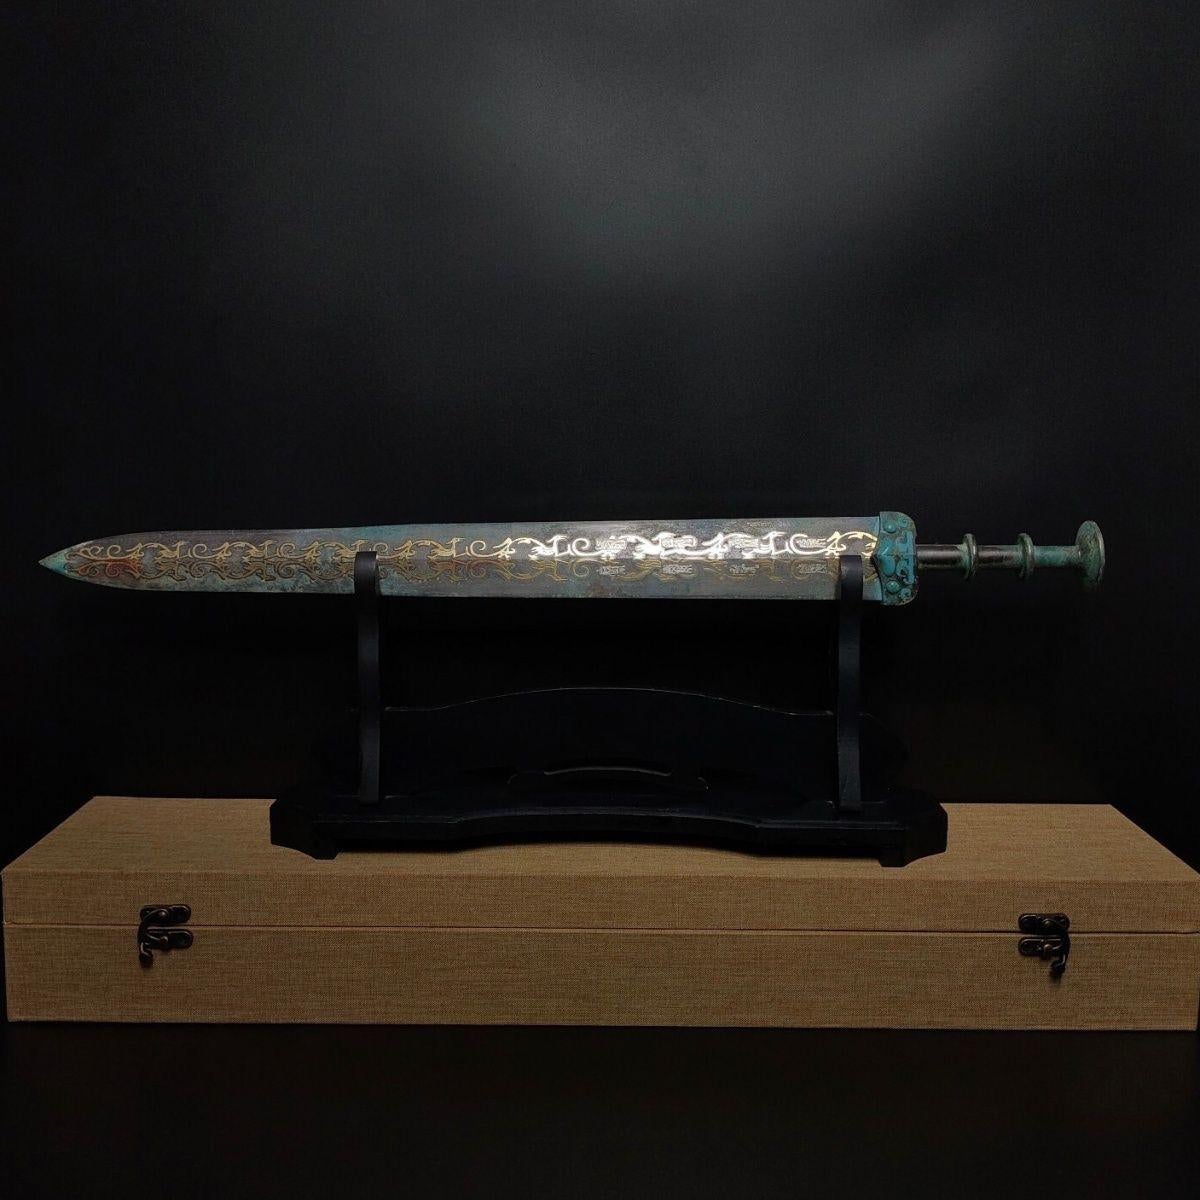 Cette épée chinoise antique en bronze est très bien conservée. Elle présente une excellente qualité de cuivre, une structure fine, une patine douce, un tranchant lisse et acéré. La lame de cette épée est plus longue ; la tige peut être utilisée à